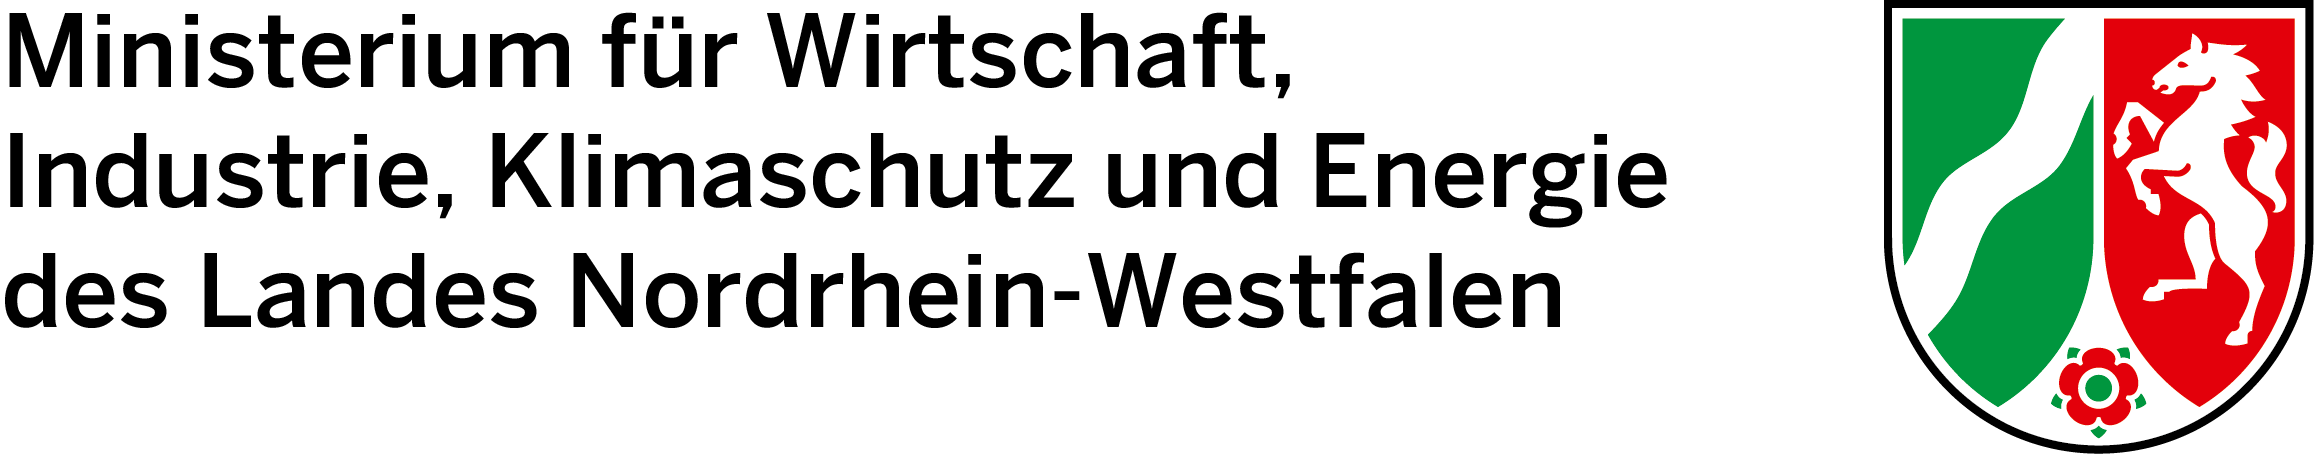 Logo del Ministero dell'economia, dell'industria, della protezione del clima e dell'energia dello Stato della Renania settentrionale-Vestfalia